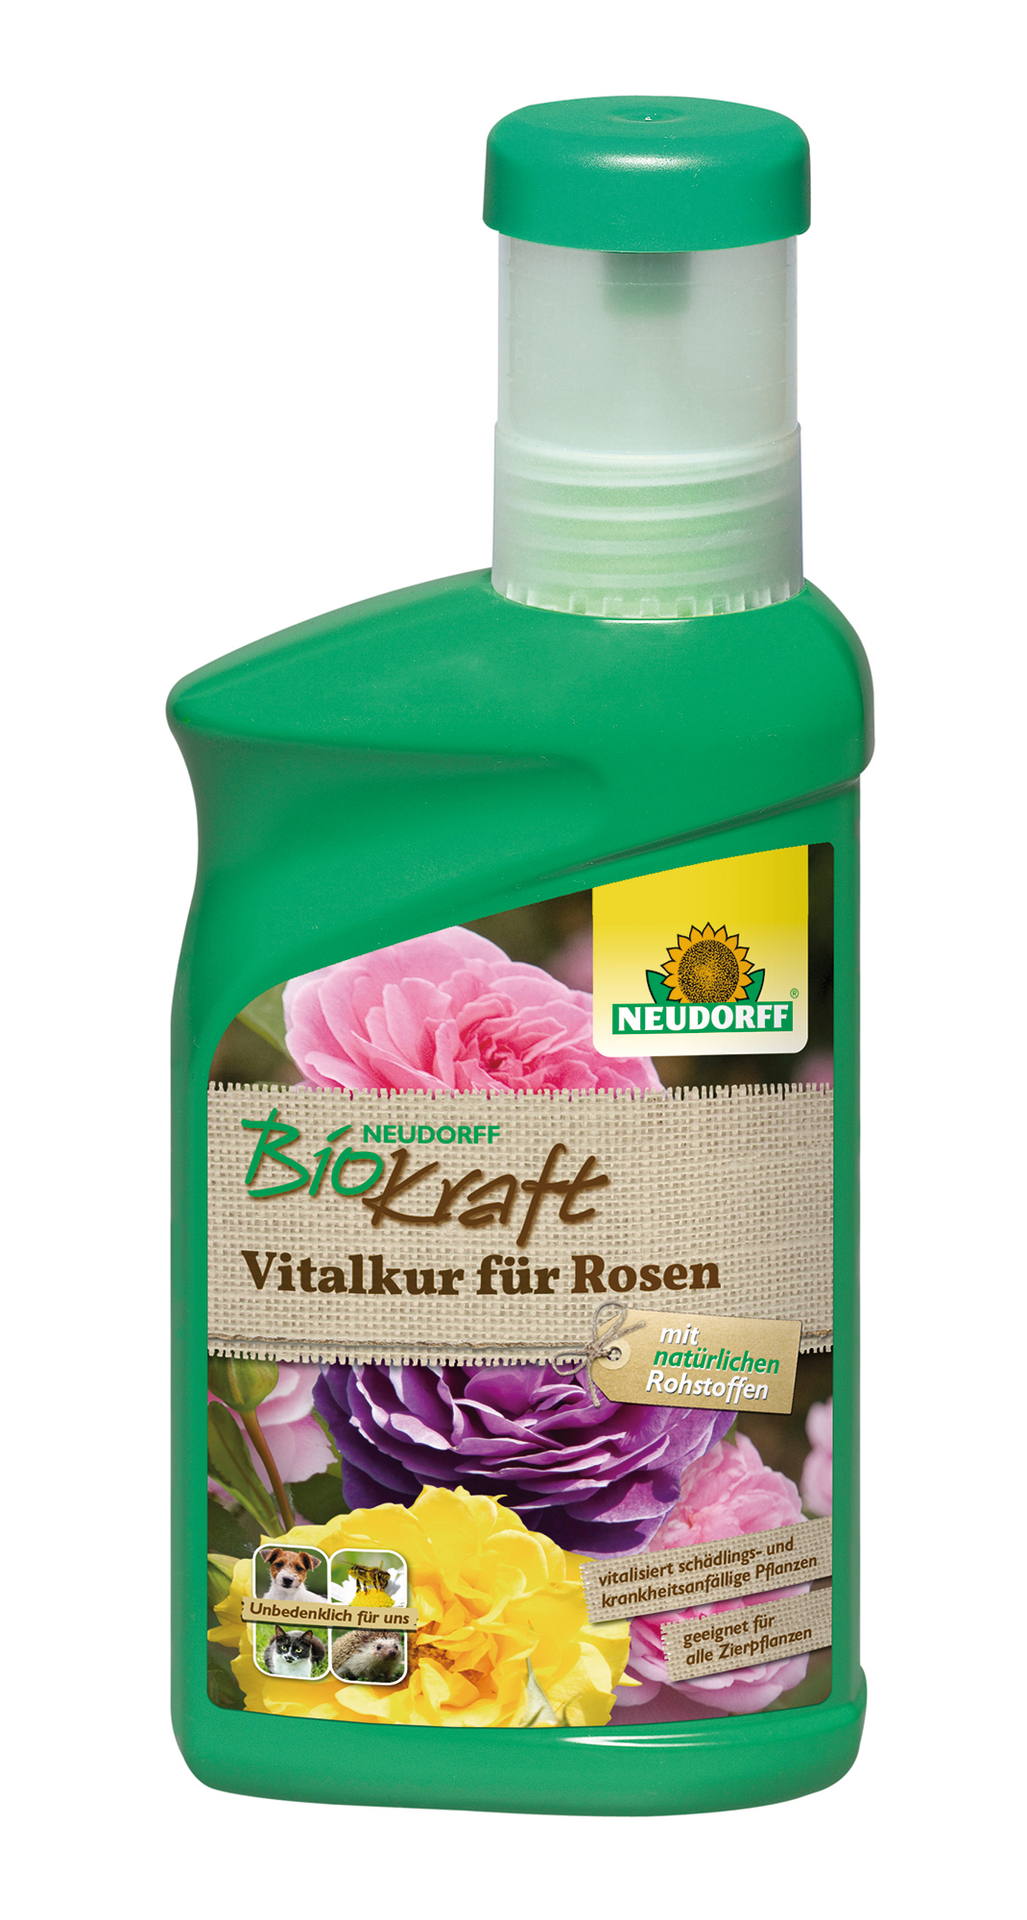 W. Neudorff GmbH KG BioKraft Vitalkur für Rosen 300ml